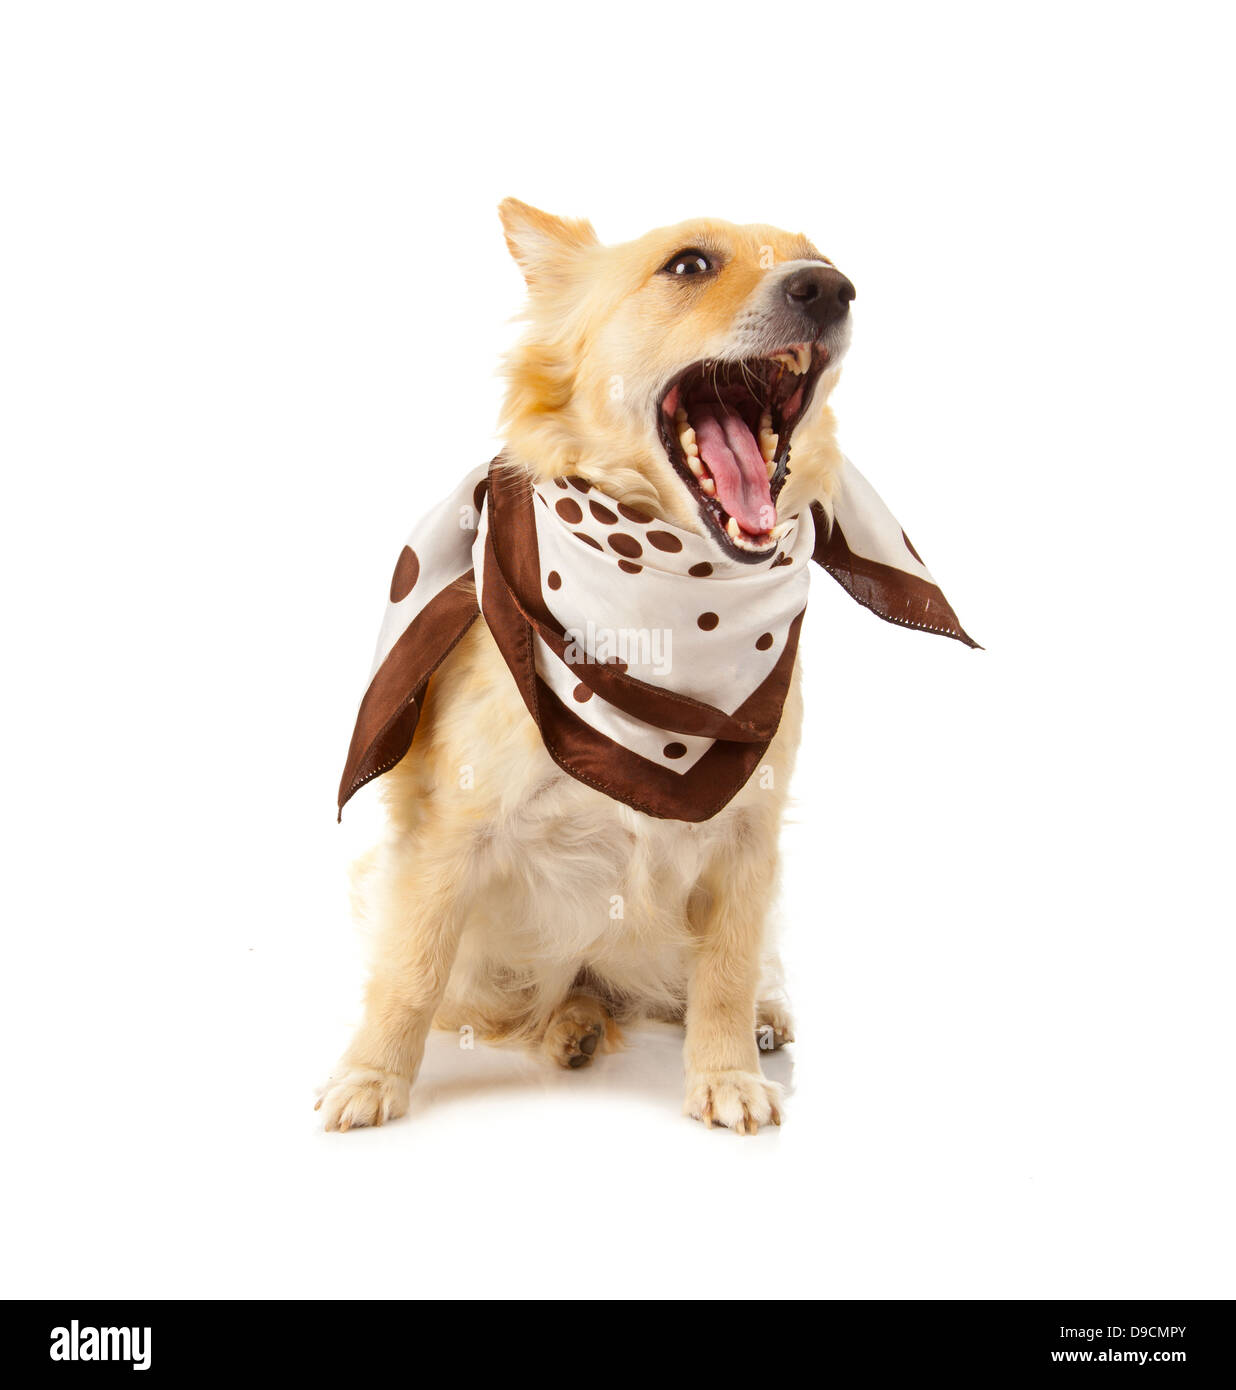 Spitz dog with bandana on white background Stock Photo